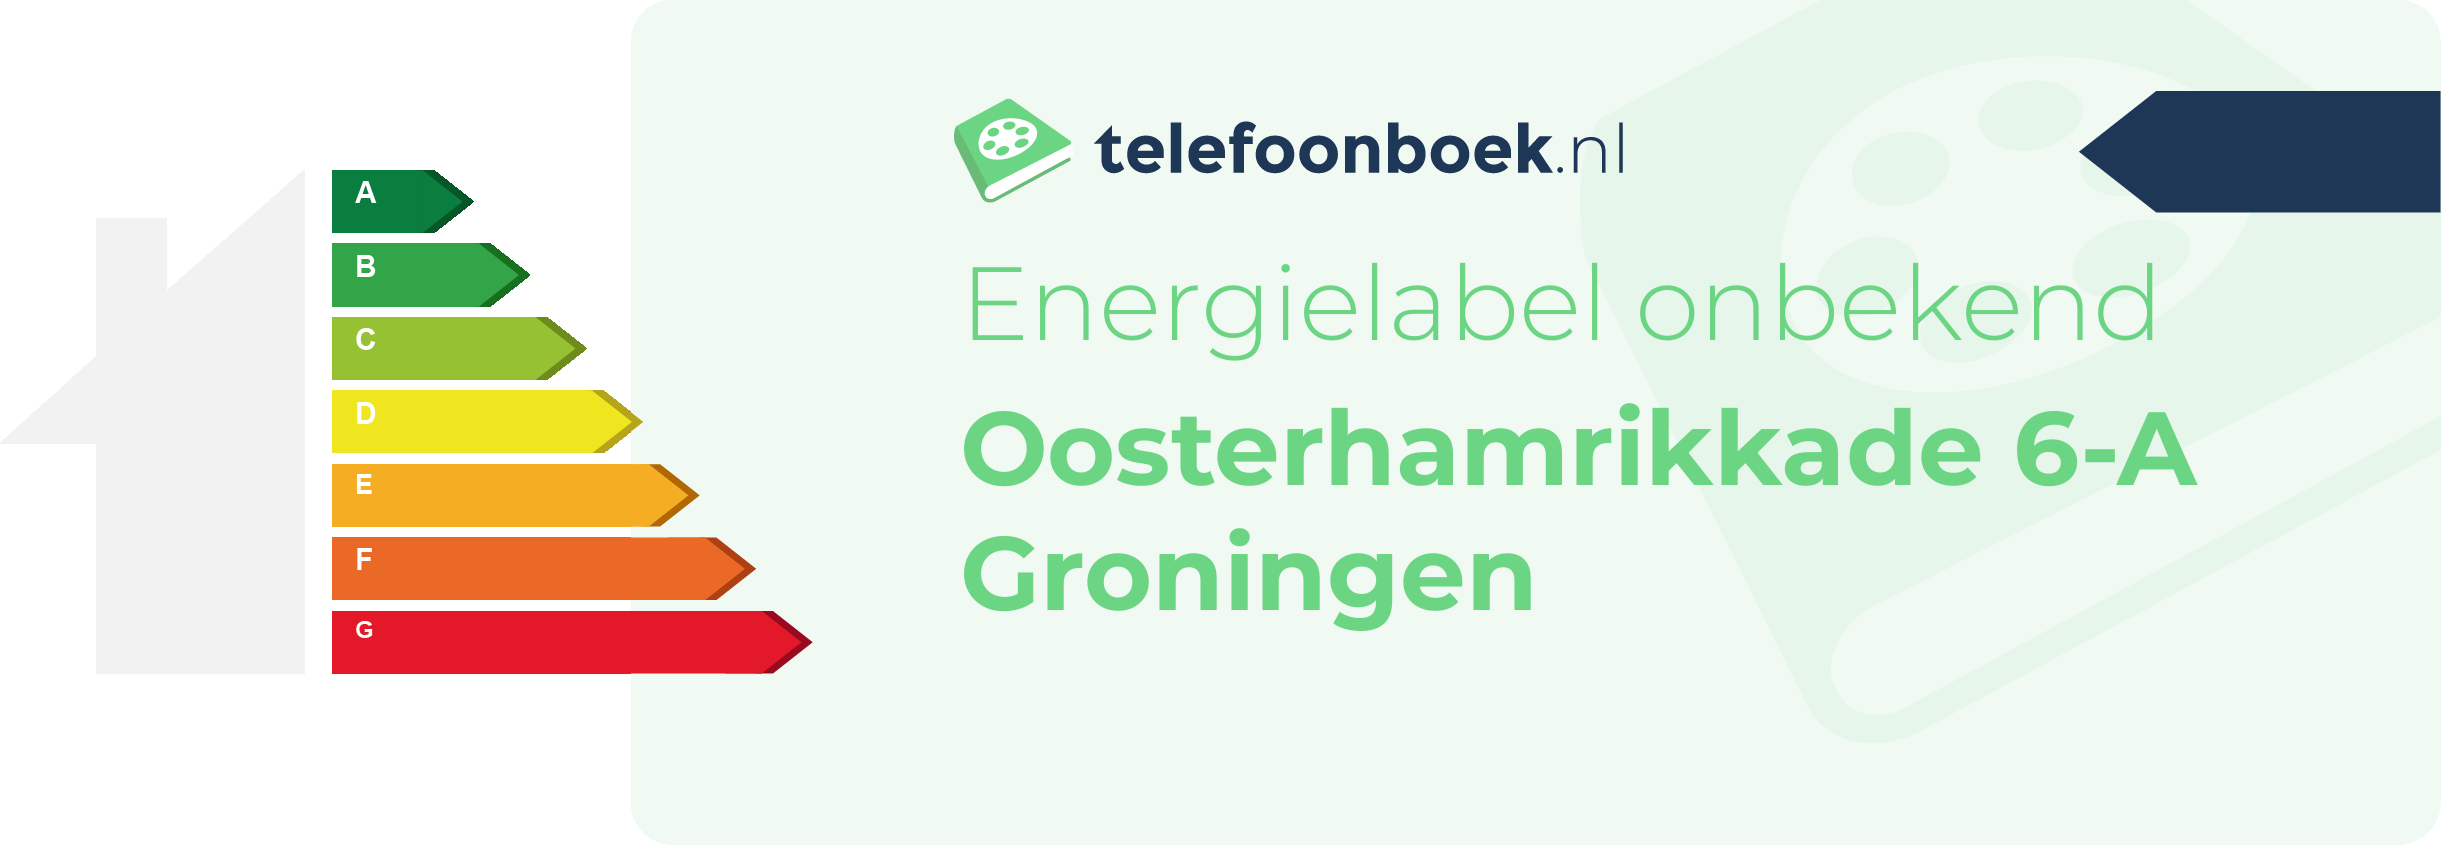 Energielabel Oosterhamrikkade 6-A Groningen